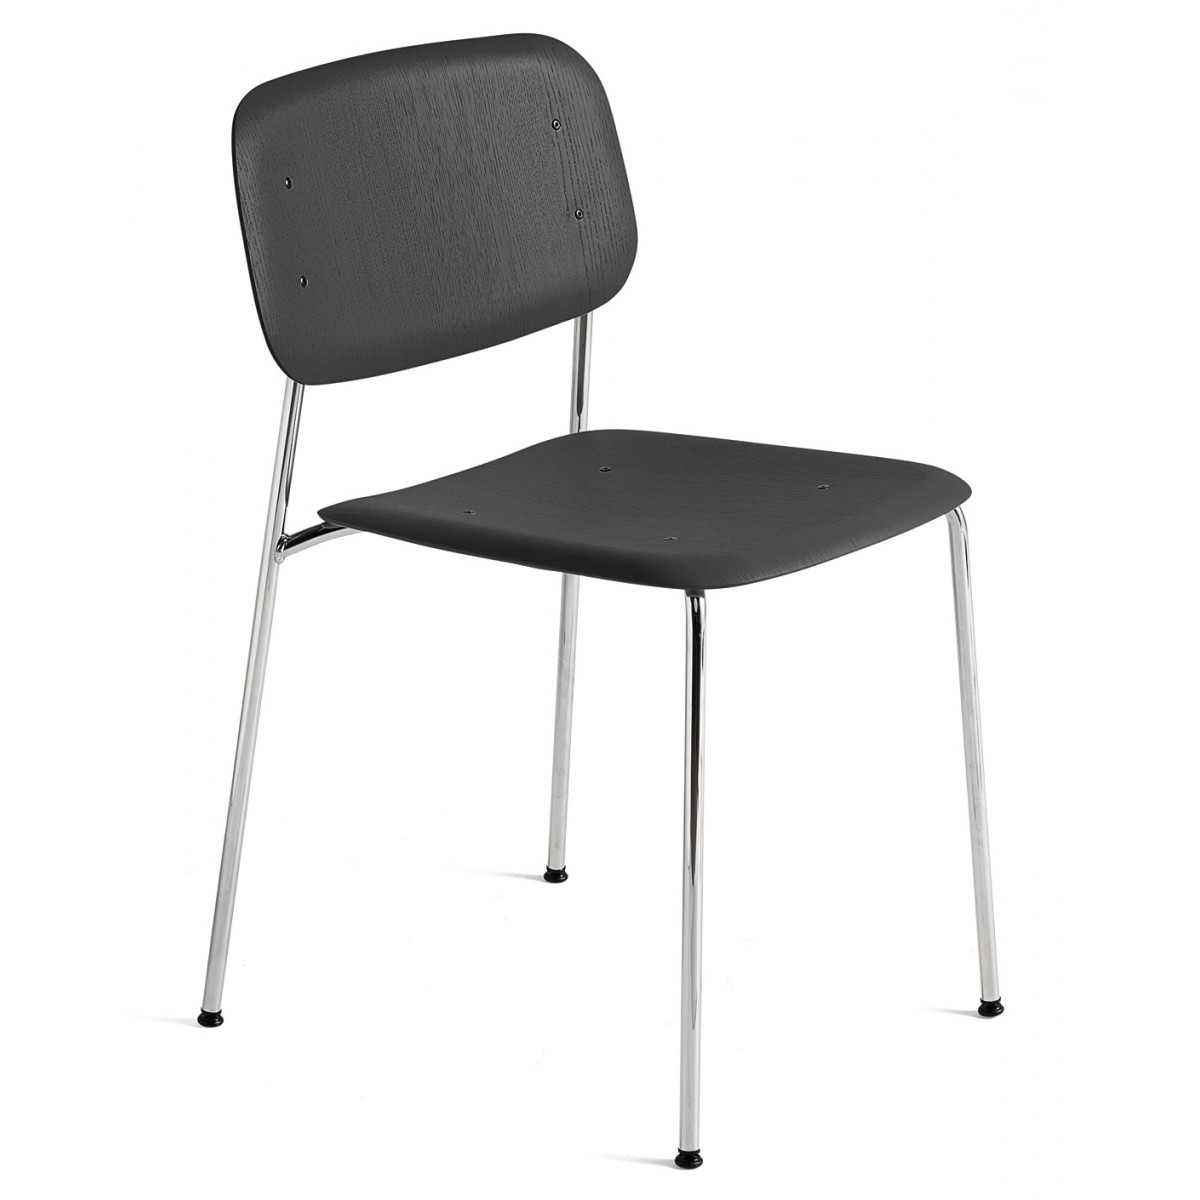 soft black oak + chromed legs - Soft Edge 40 chair